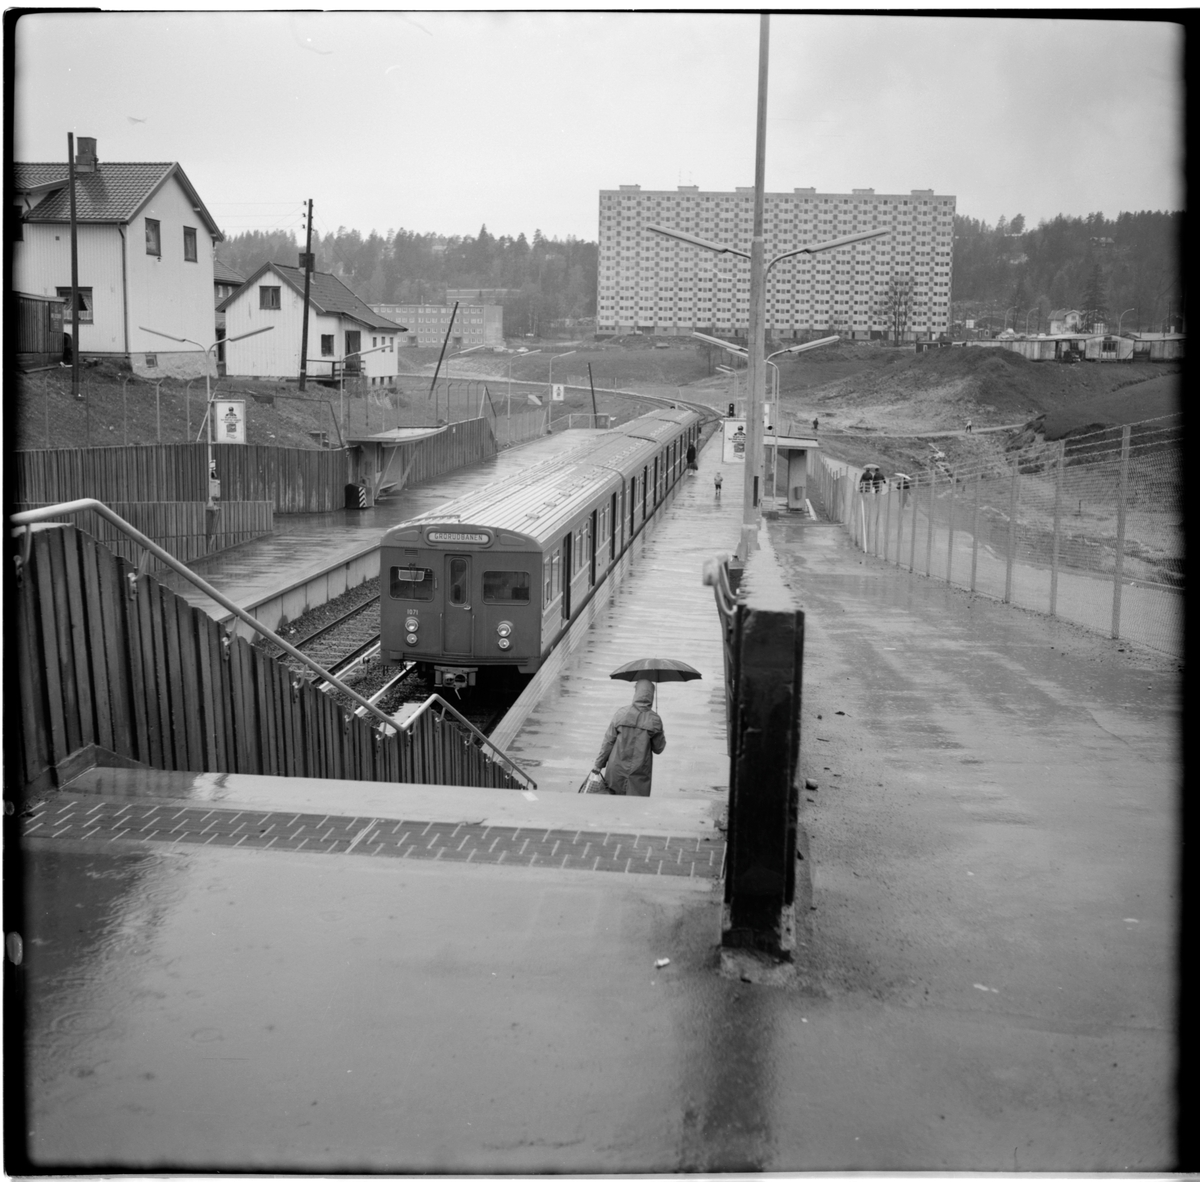 Aksjeselskap Oslo Sporveier, OS T1-1 1035 Grorudbanen på Grorud station.